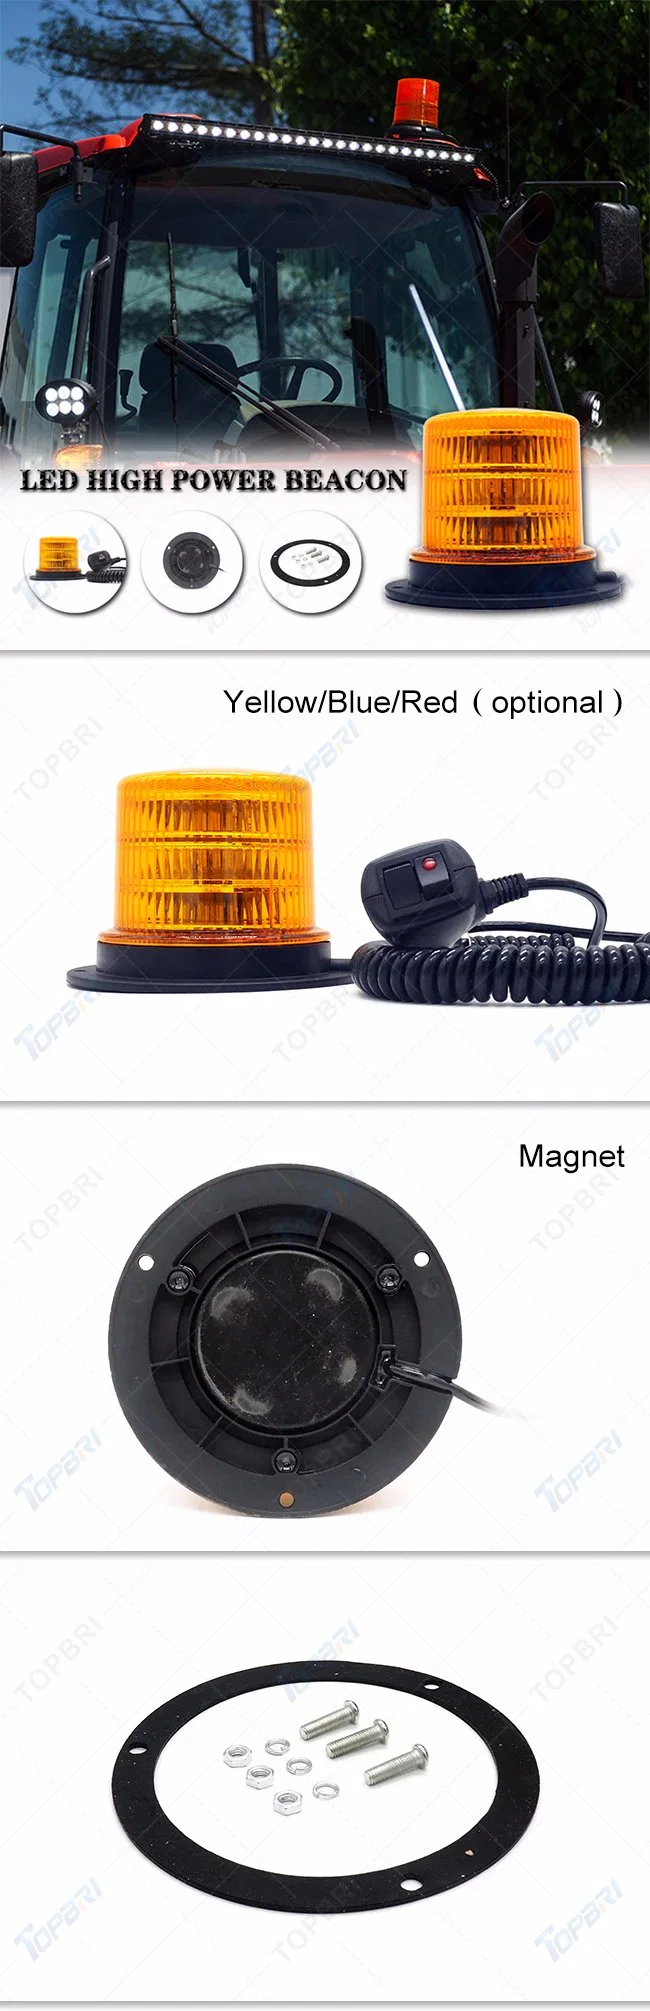 Amber Warning LED Work Beacon Light for Vehicle Lighting